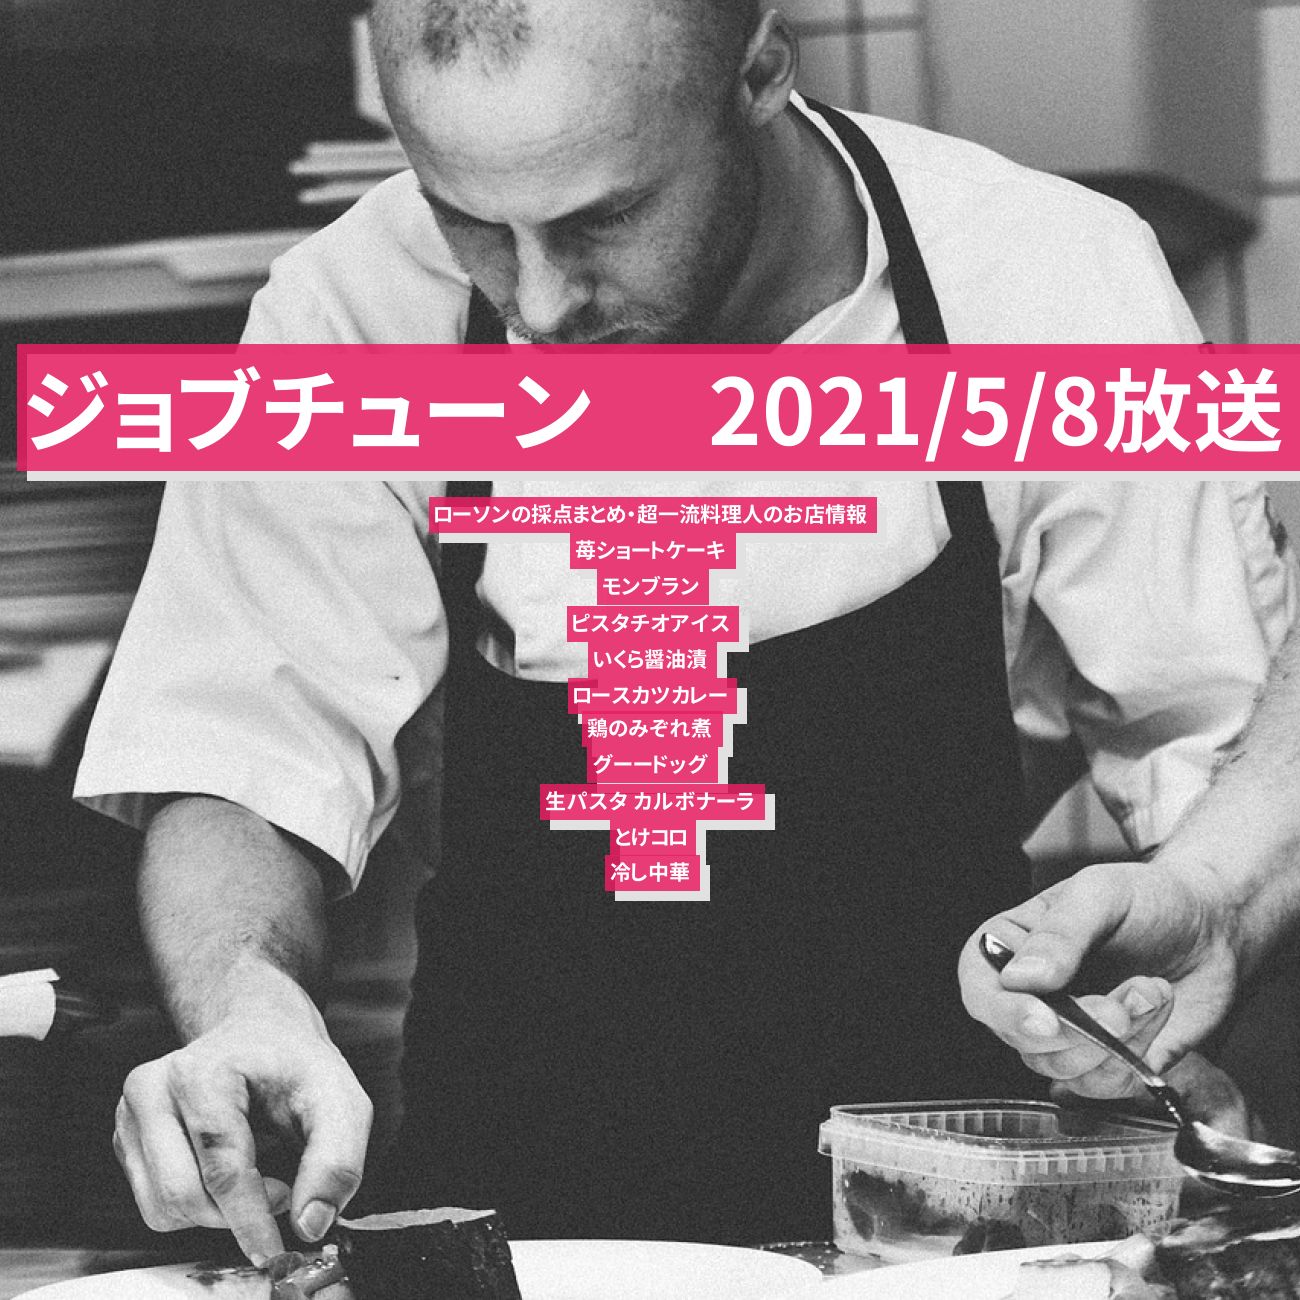 【ジョブチューン 】ローソンの採点まとめ・超一流料理人のお店情報　2021/5/8放送